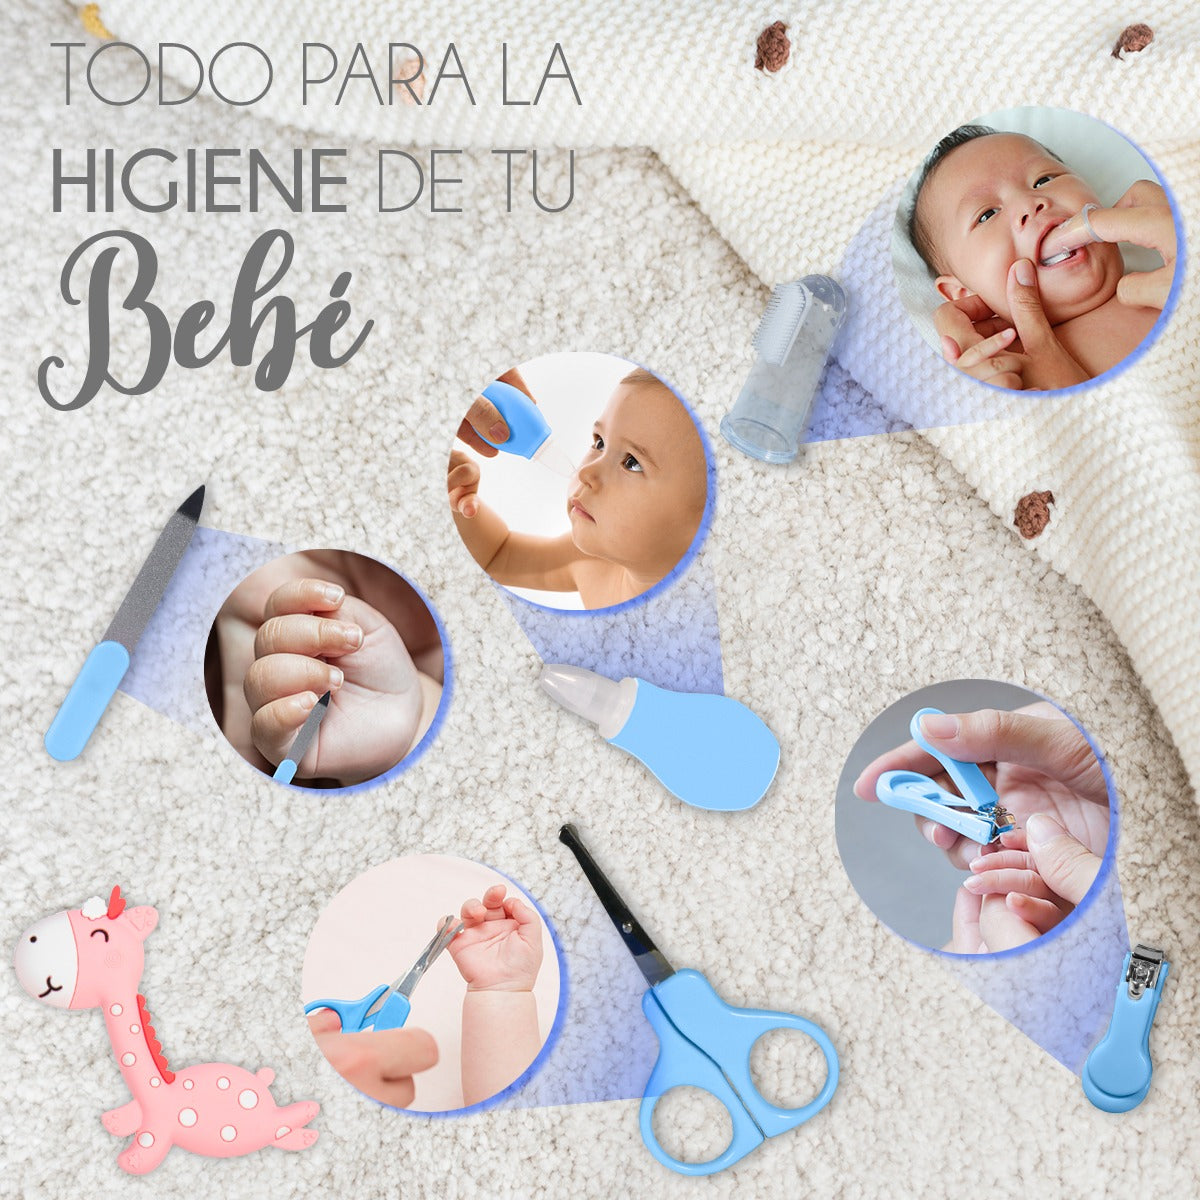 Higiene,Salud y Cuidado del Bebé